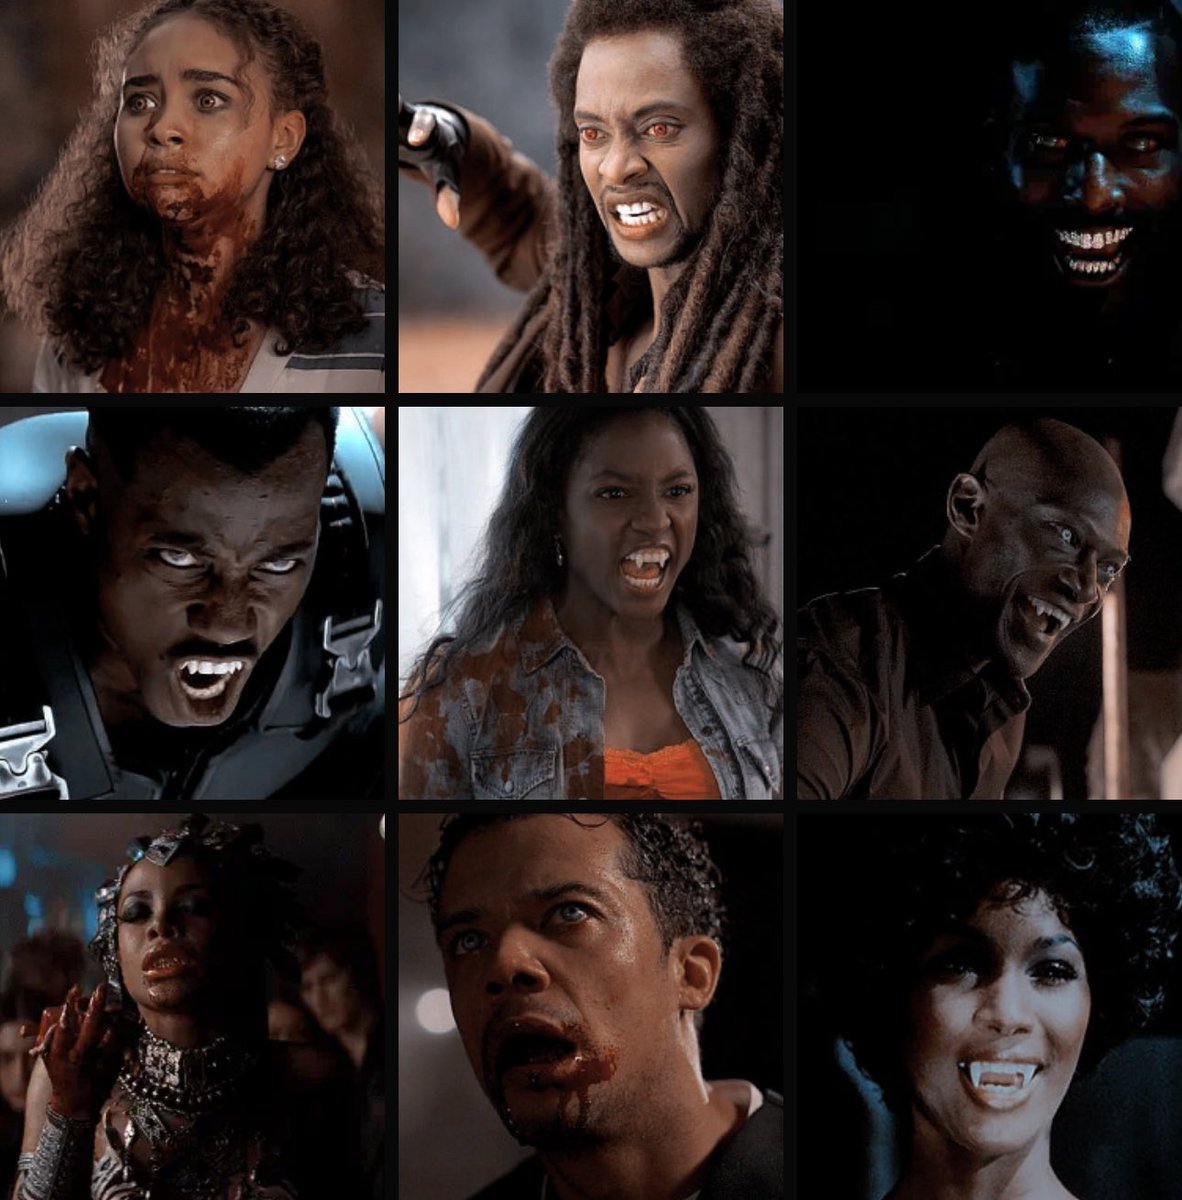 Black Vampires #HappyBlackHistoryMonth